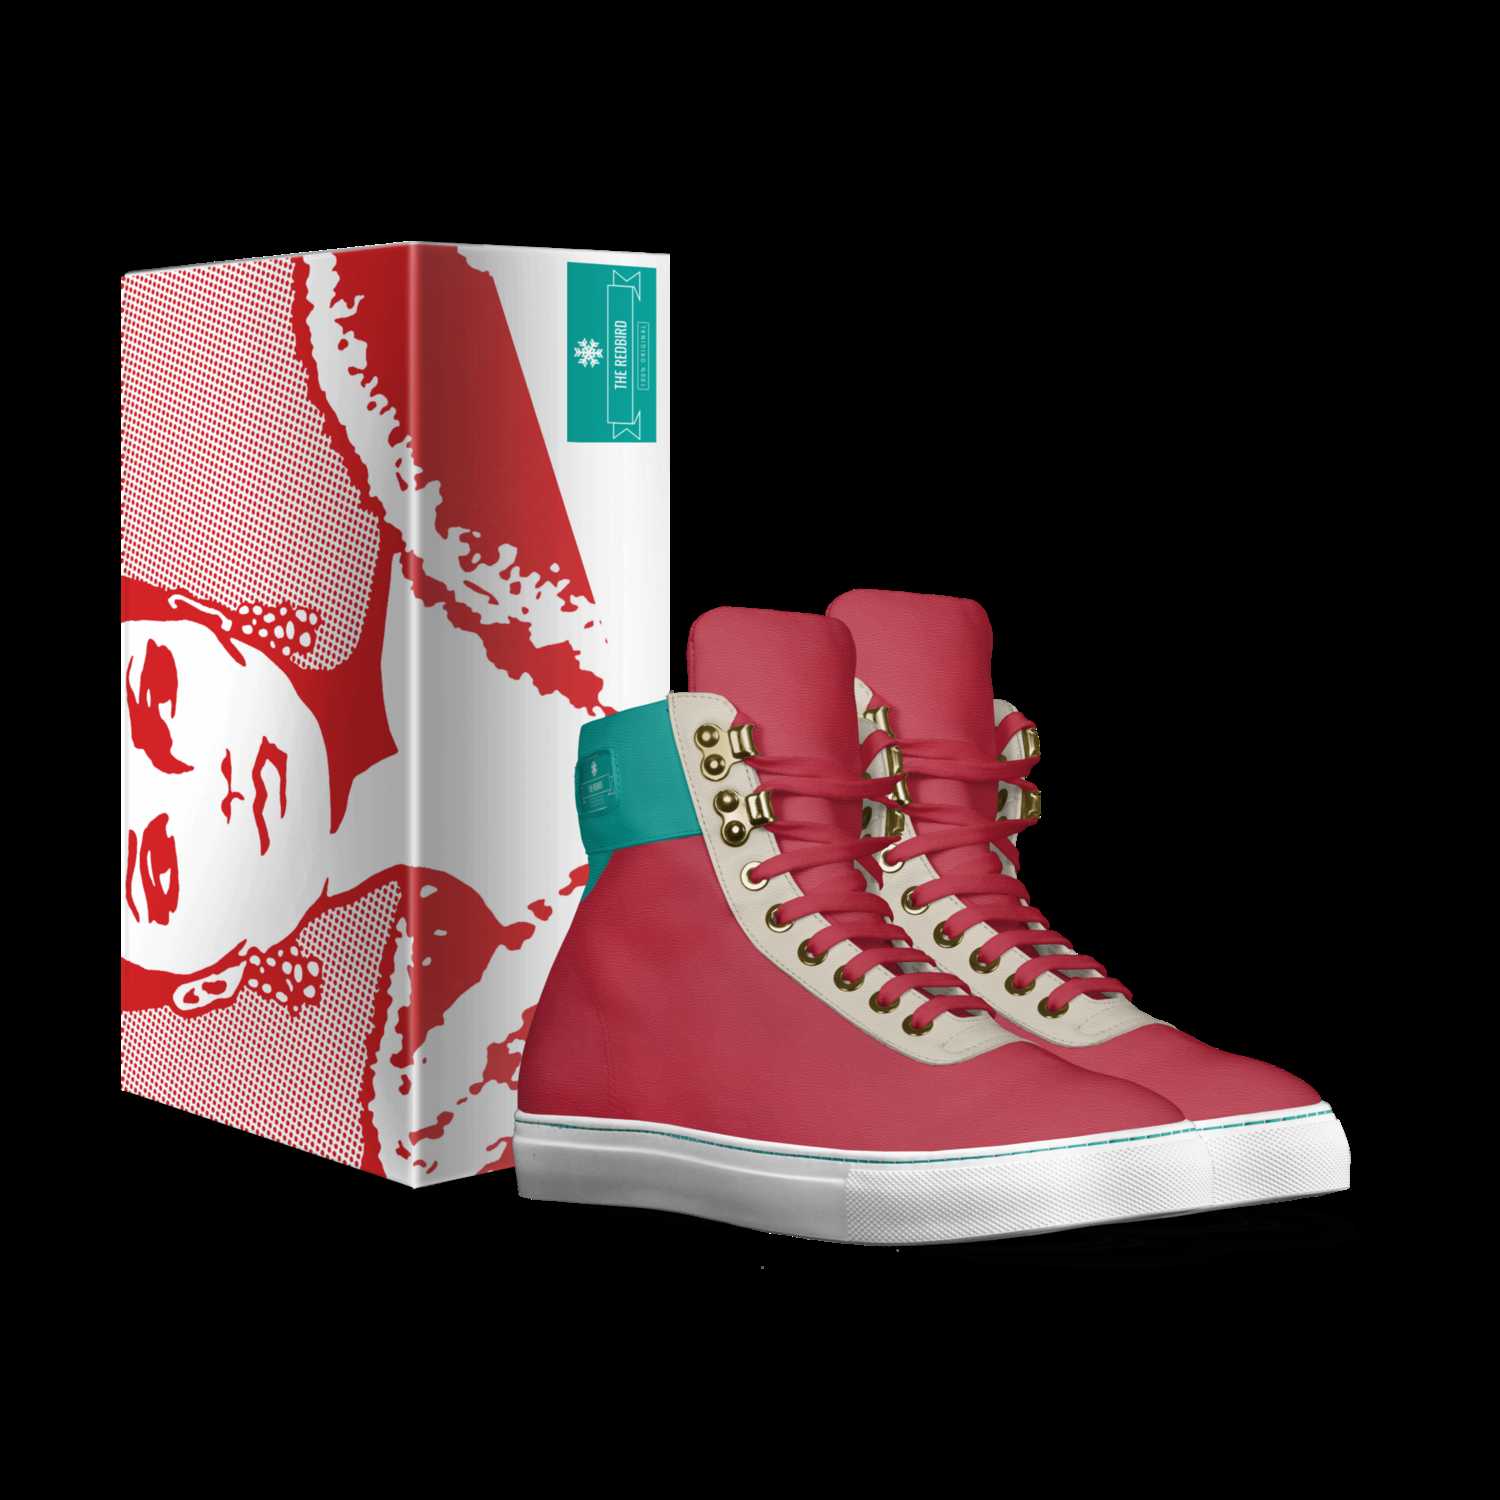 The Redbird | A Custom Shoe concept by 